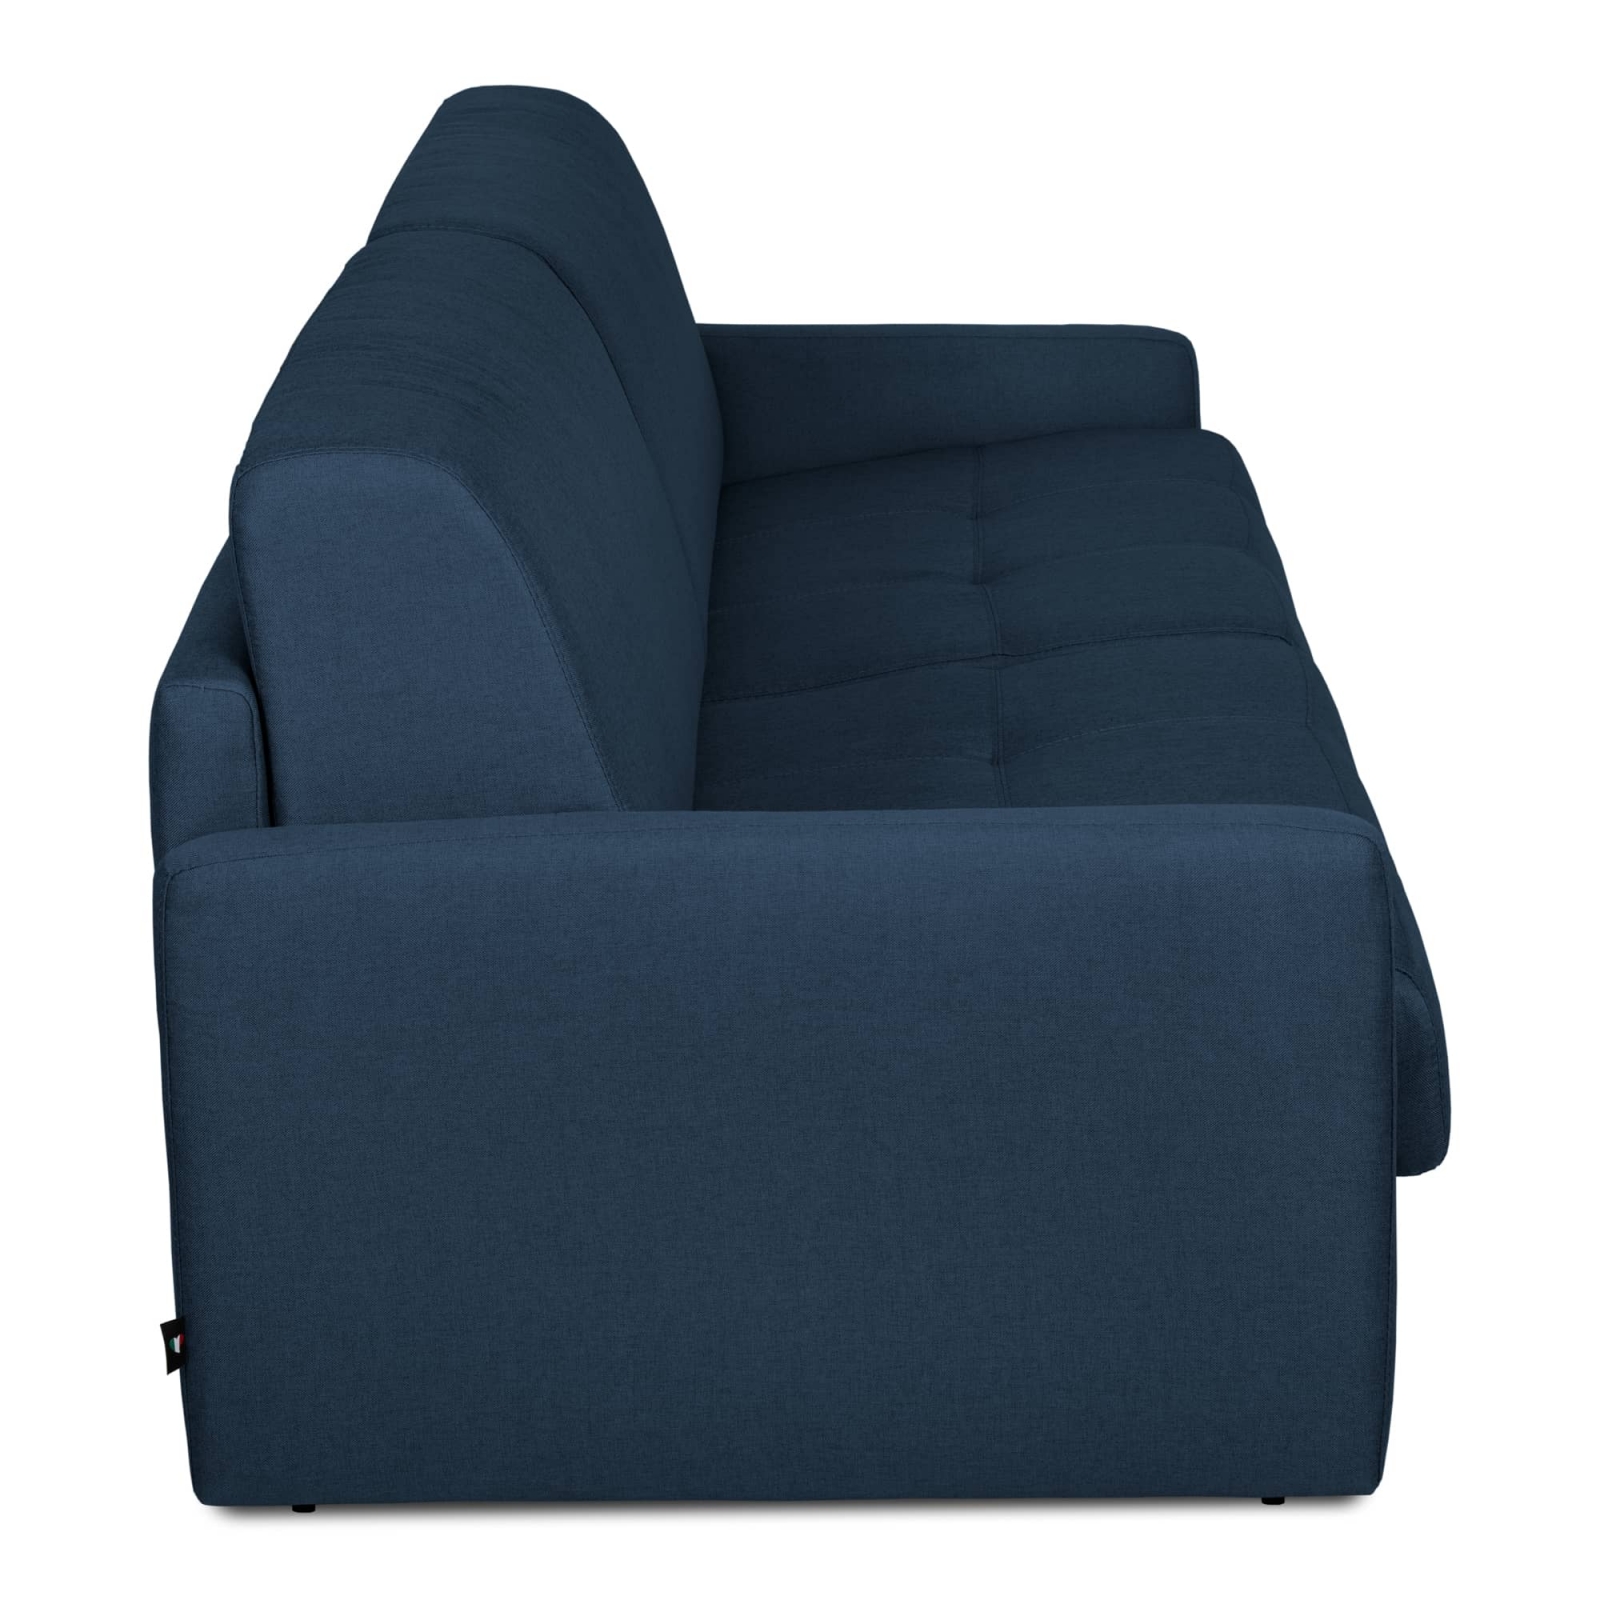 Canapé convertible 3 places en tissu bleu denim ouverture express, accoudoirs slim